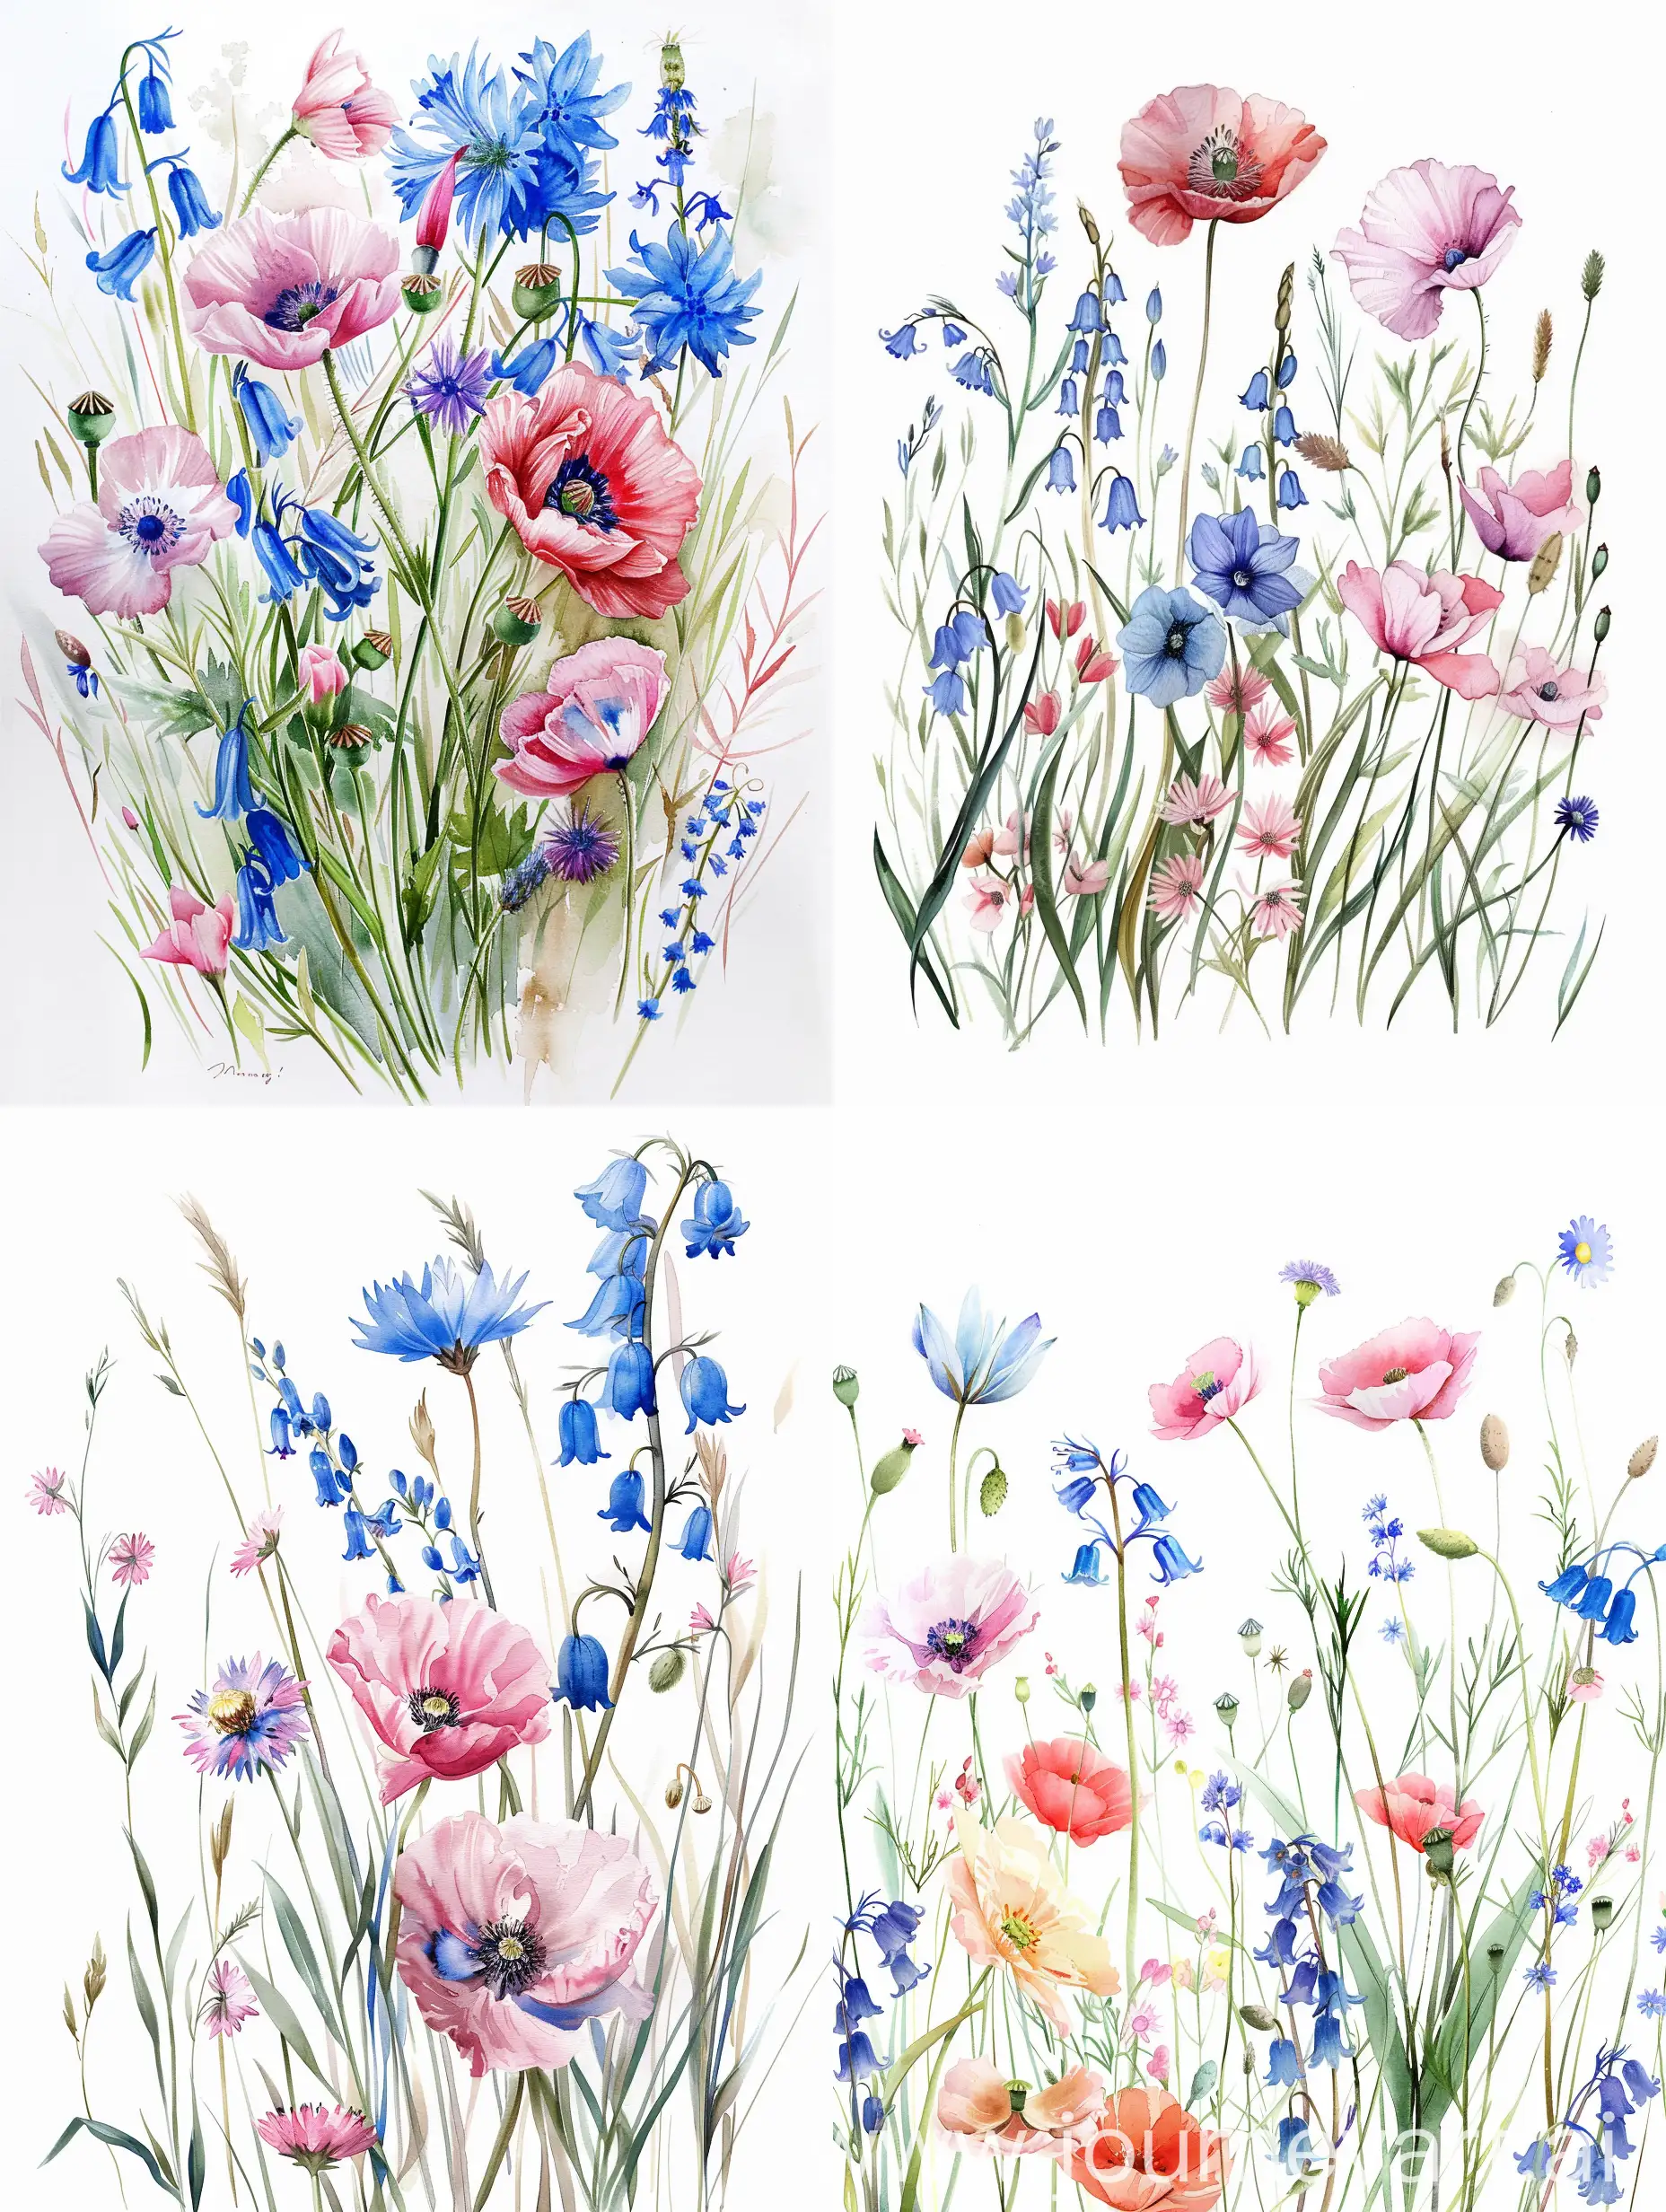 Vacker handmålad akvarell målning, med vildblommor, med blåklockor, blåklint, rosa vallmo, mjukt handmålade, detaljerade, på vit bakgrund